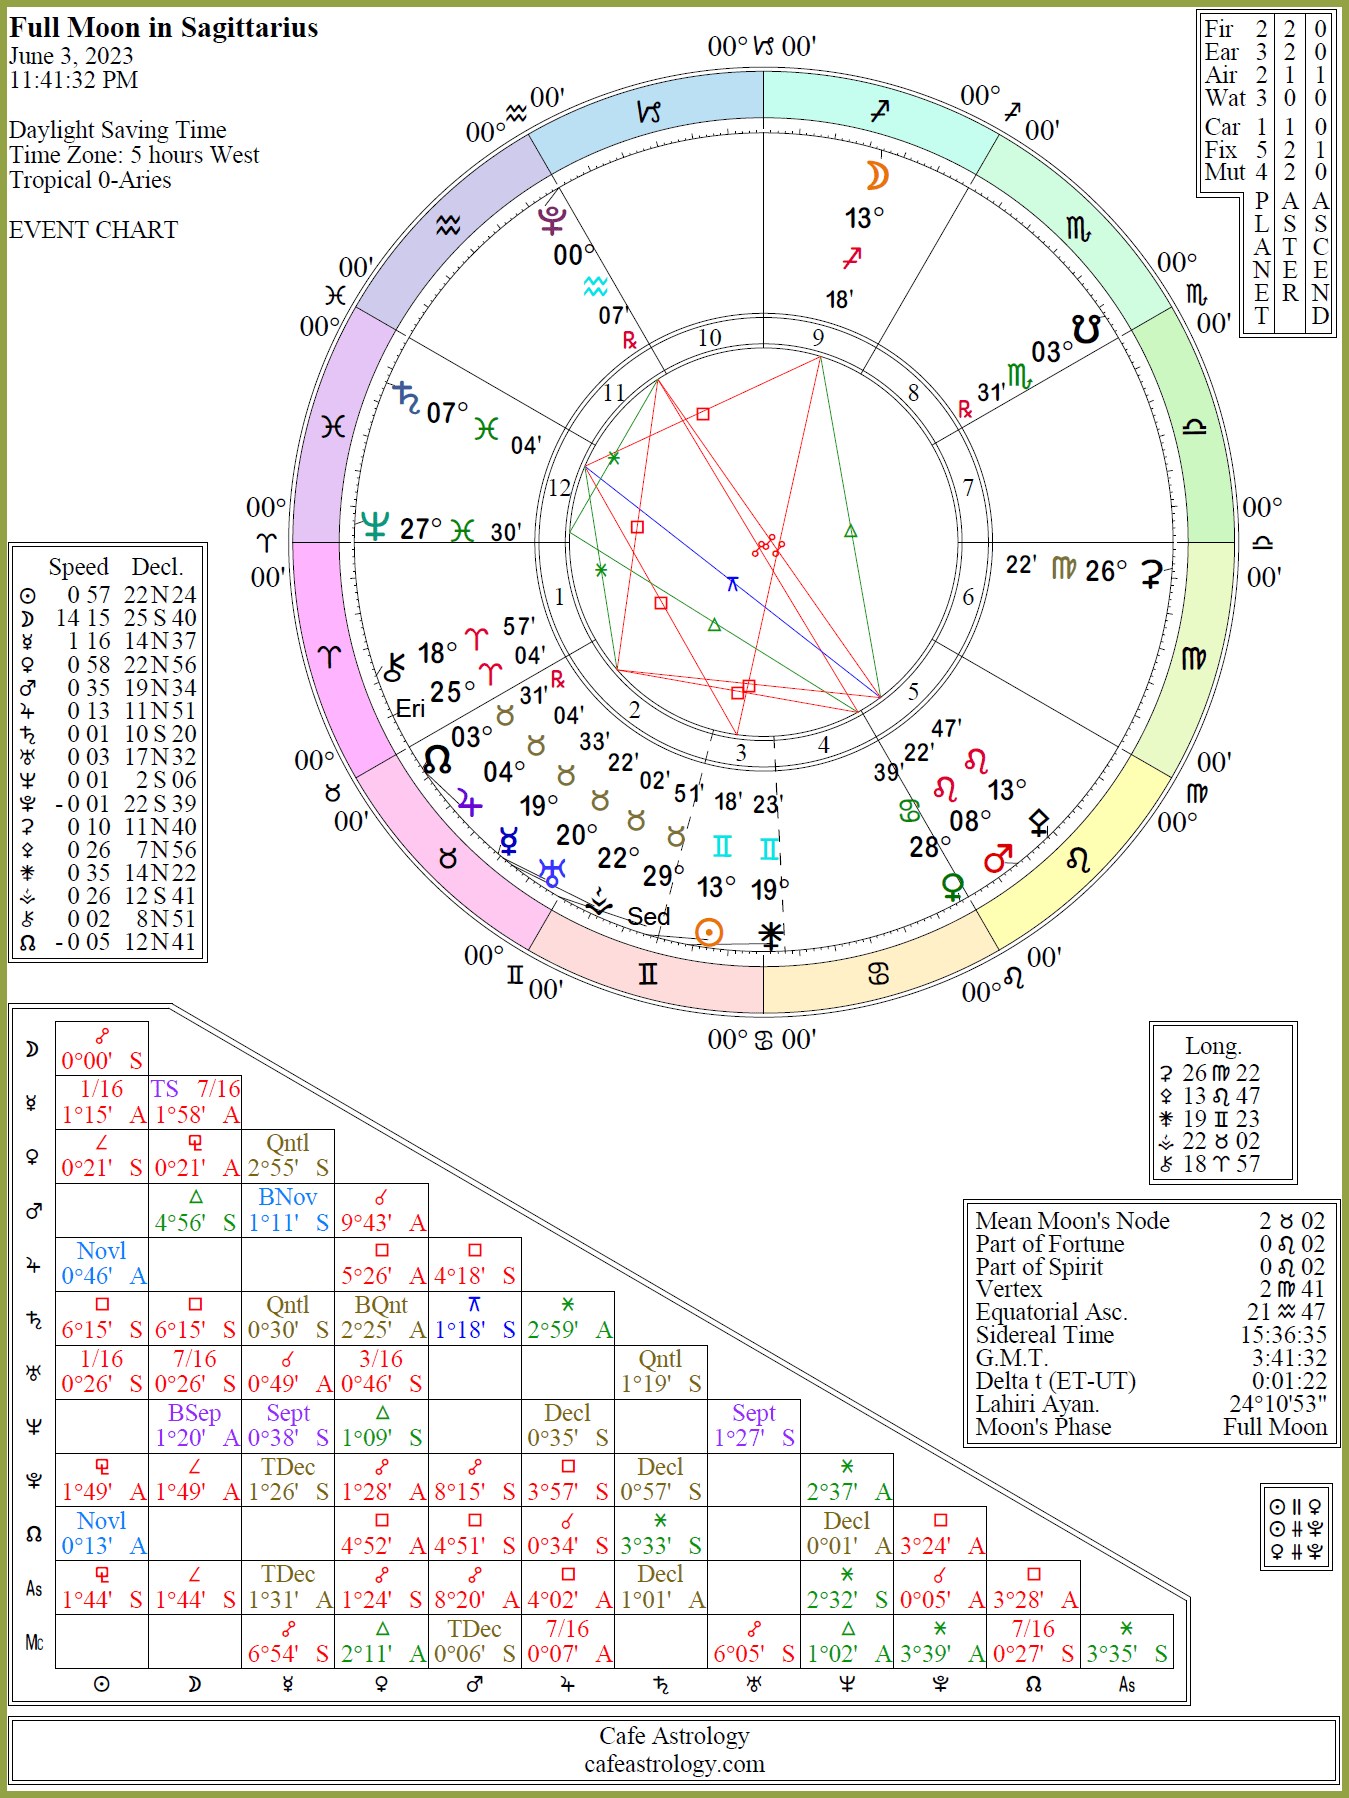 Full Moon on June 3, 2023 Cafe Astrology